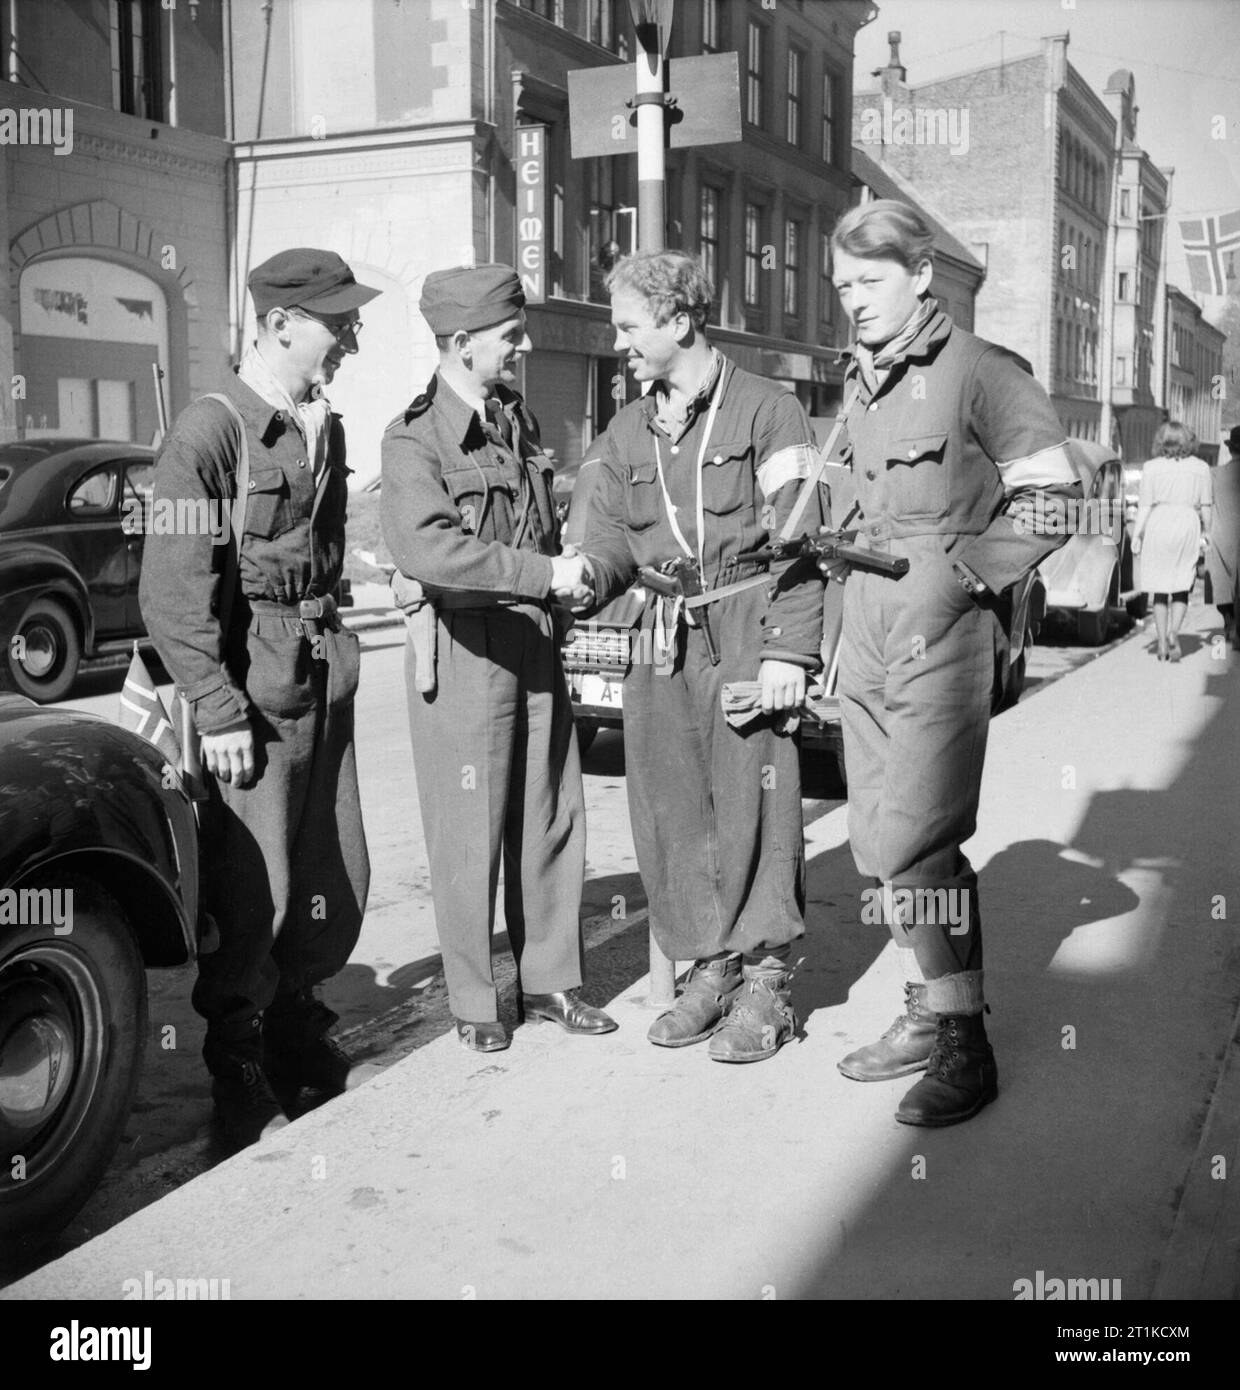 Squadron Leader J Macadam trifft sich drei norwegischen Widerstandskämpfer in Oslo nach der Ankunft der Britischen Streitkräfte in Norwegen, 11. Mai 1945. Squadron Leader J Macadam trifft sich drei norwegischen Widerstandskämpfer in Oslo nach der Ankunft der Britischen Streitkräfte in Norwegen. Stockfoto